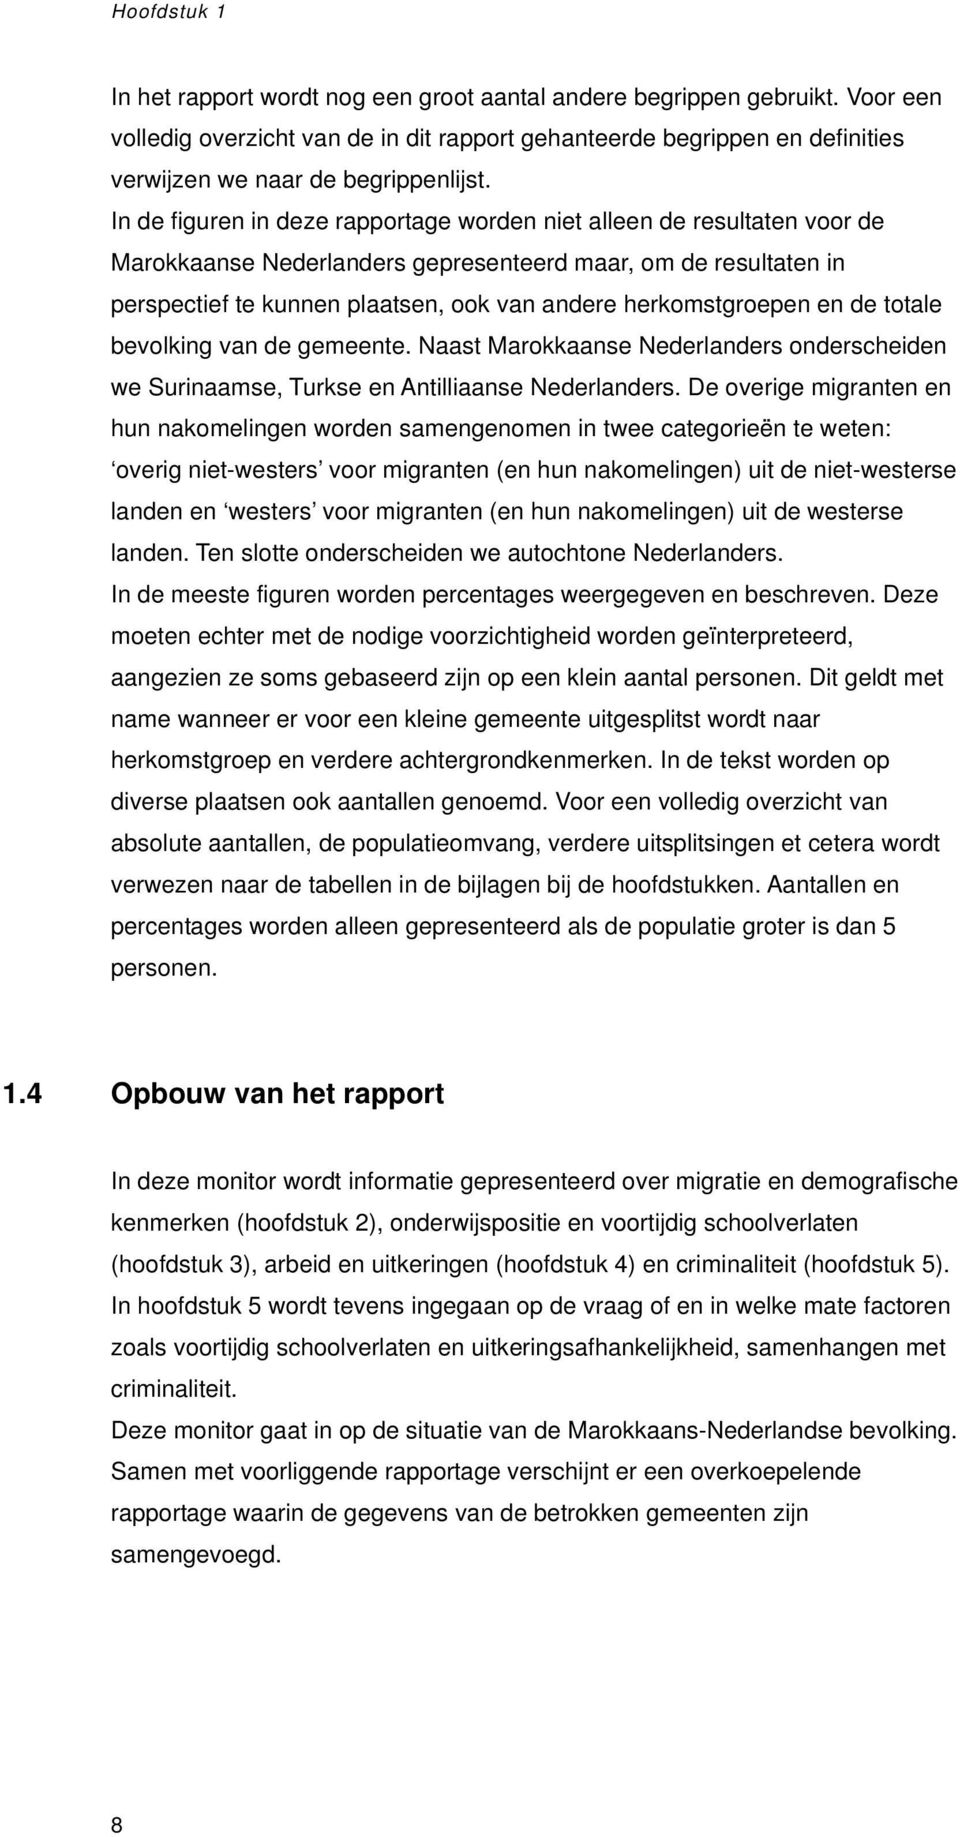 In de figuren in deze rapportage worden niet alleen de resultaten voor de Marokkaanse Nederlanders gepresenteerd maar, om de resultaten in perspectief te kunnen plaatsen, ook van andere